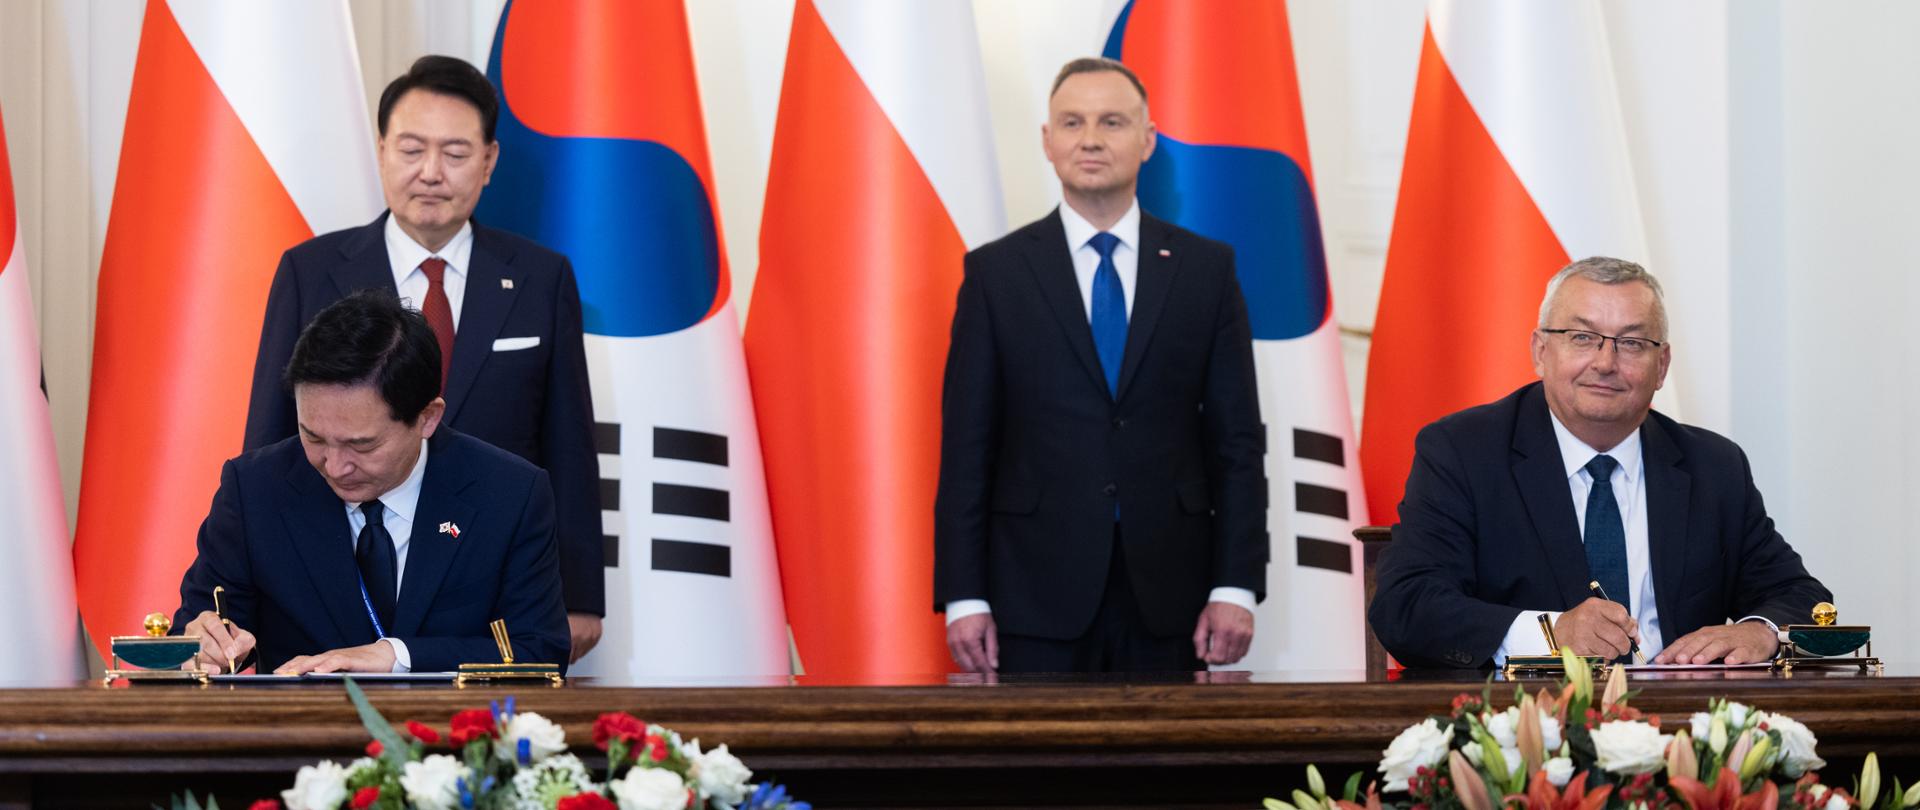 Polsko-koreańskie porozumienie na rzecz rozwoju infrastruktury transportowej